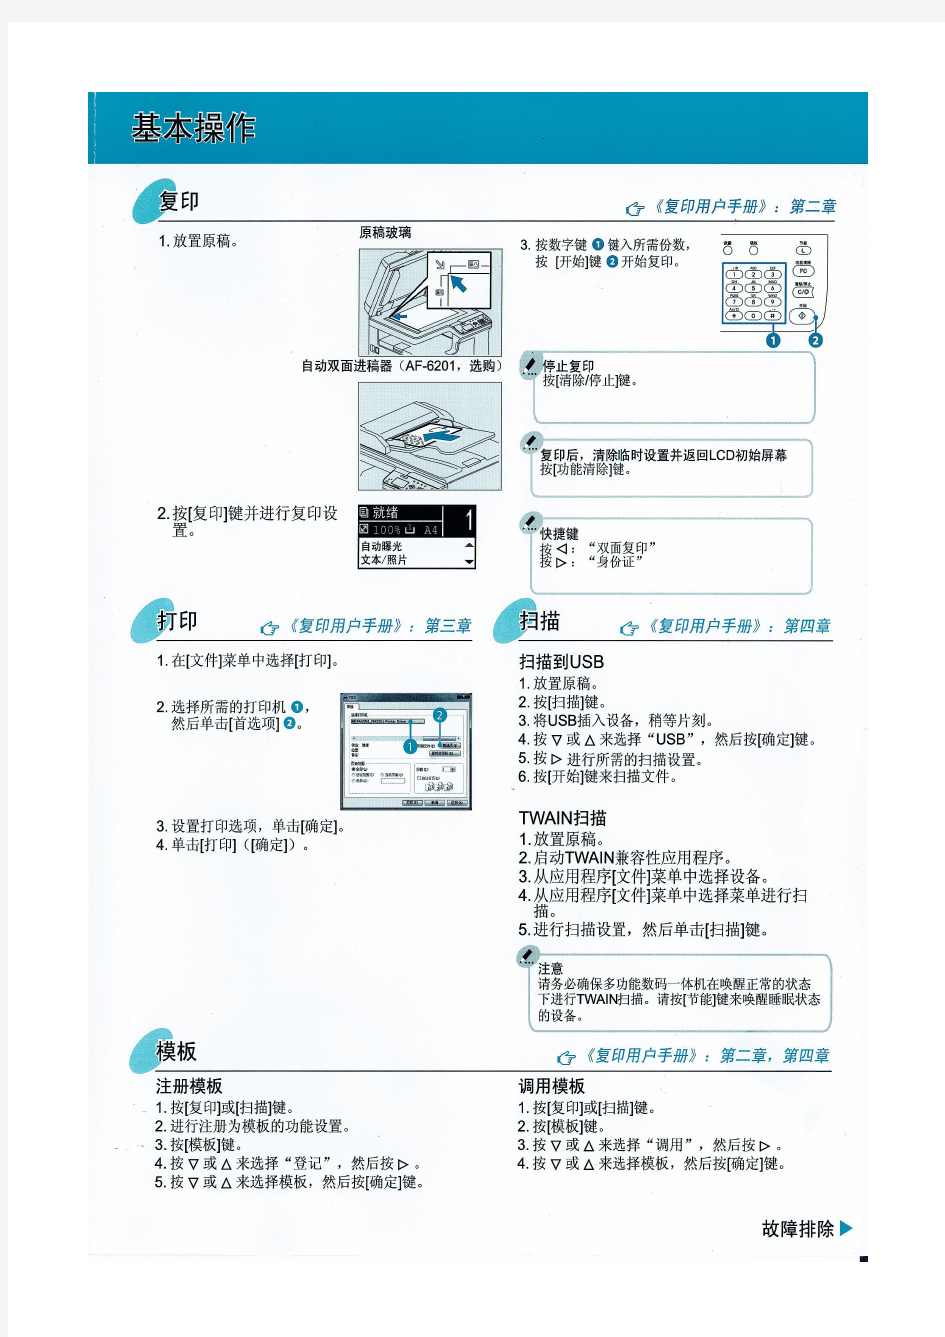 联想XM2061打印机说明书(快速指南)